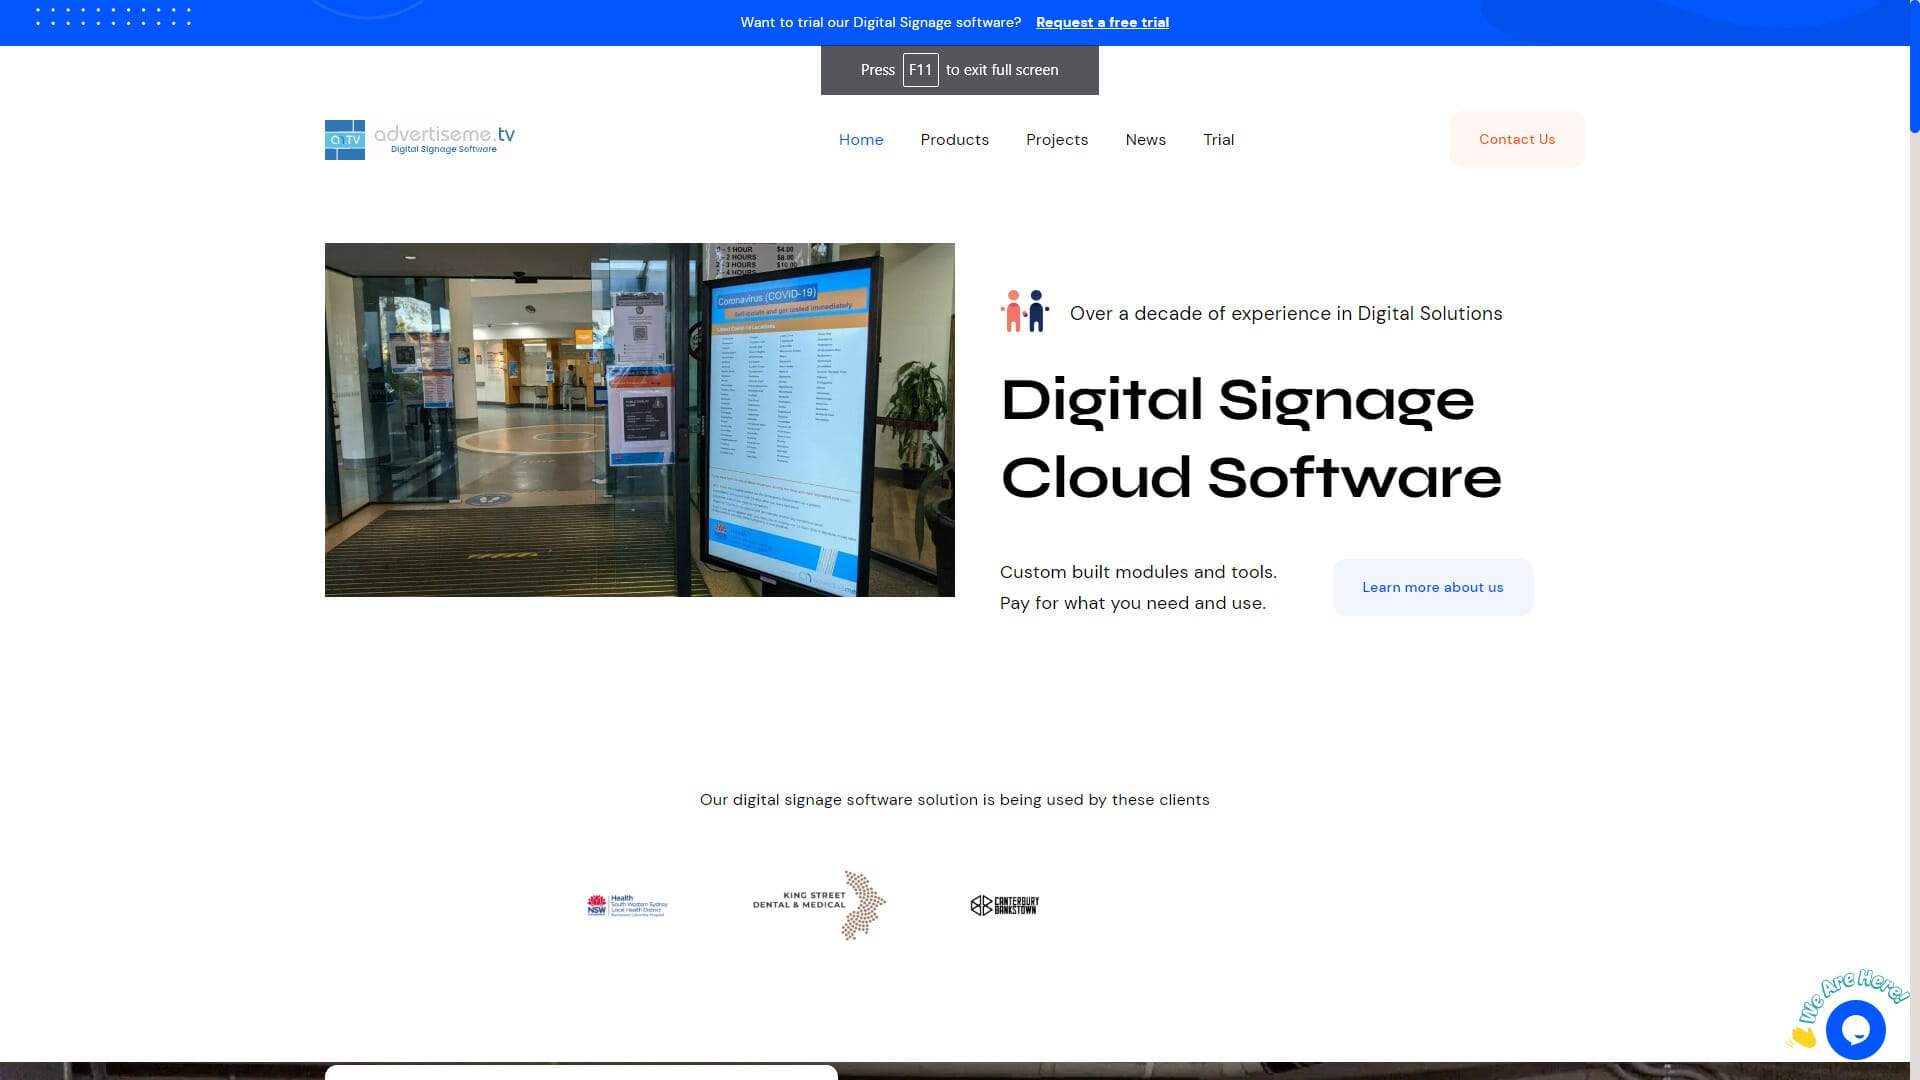 AdvertiseMe.TV Digital Signage Software Solution website